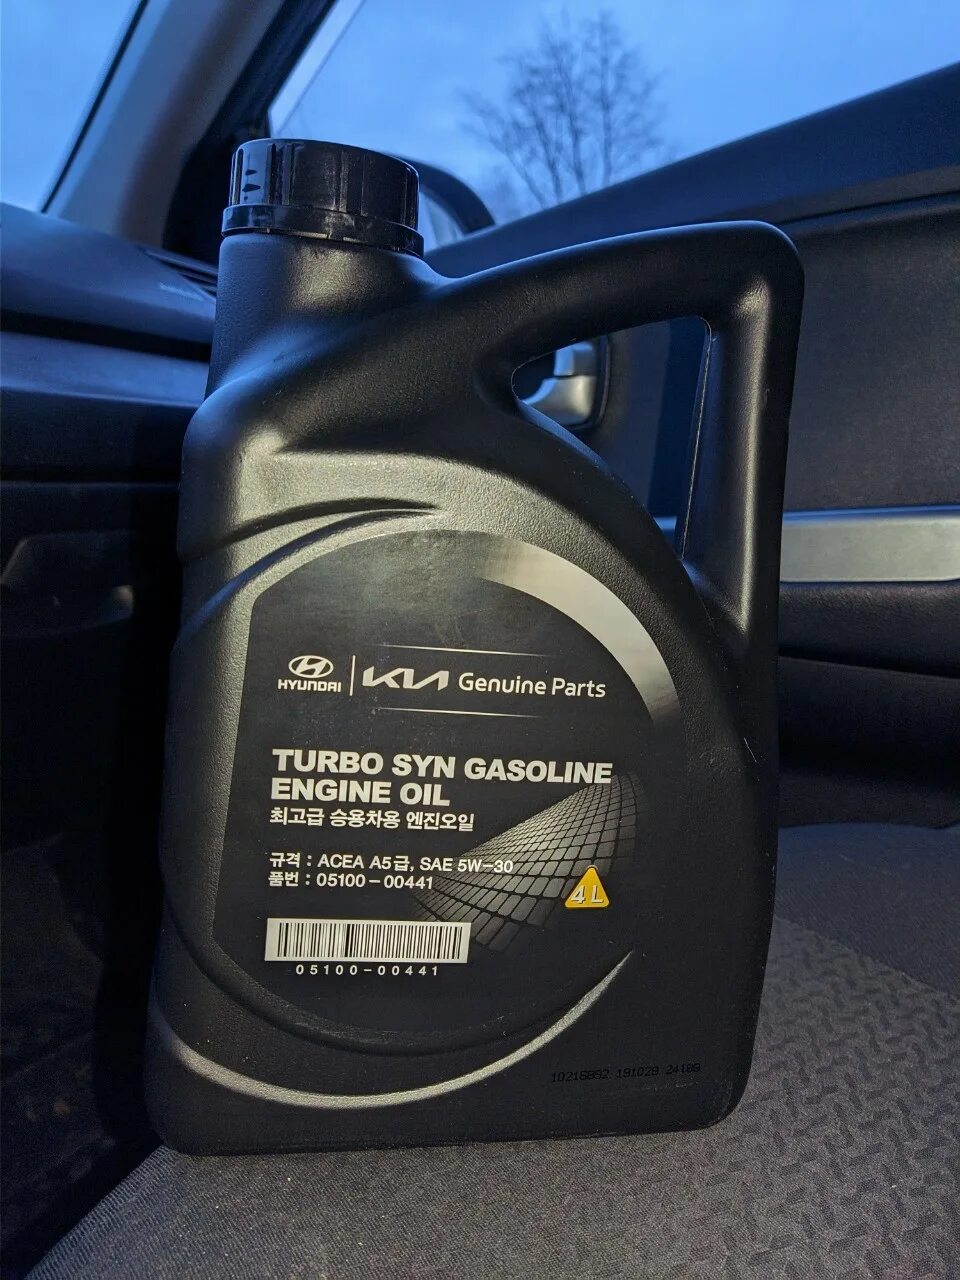 Масло газолин 5w30. Hyundai Turbo gasoline 5w-30. Hyundai Turbo syn gasoline 5w-30. Масло Hyundai 5w30 Turbo syn. Kia Turbo syn 5w30.